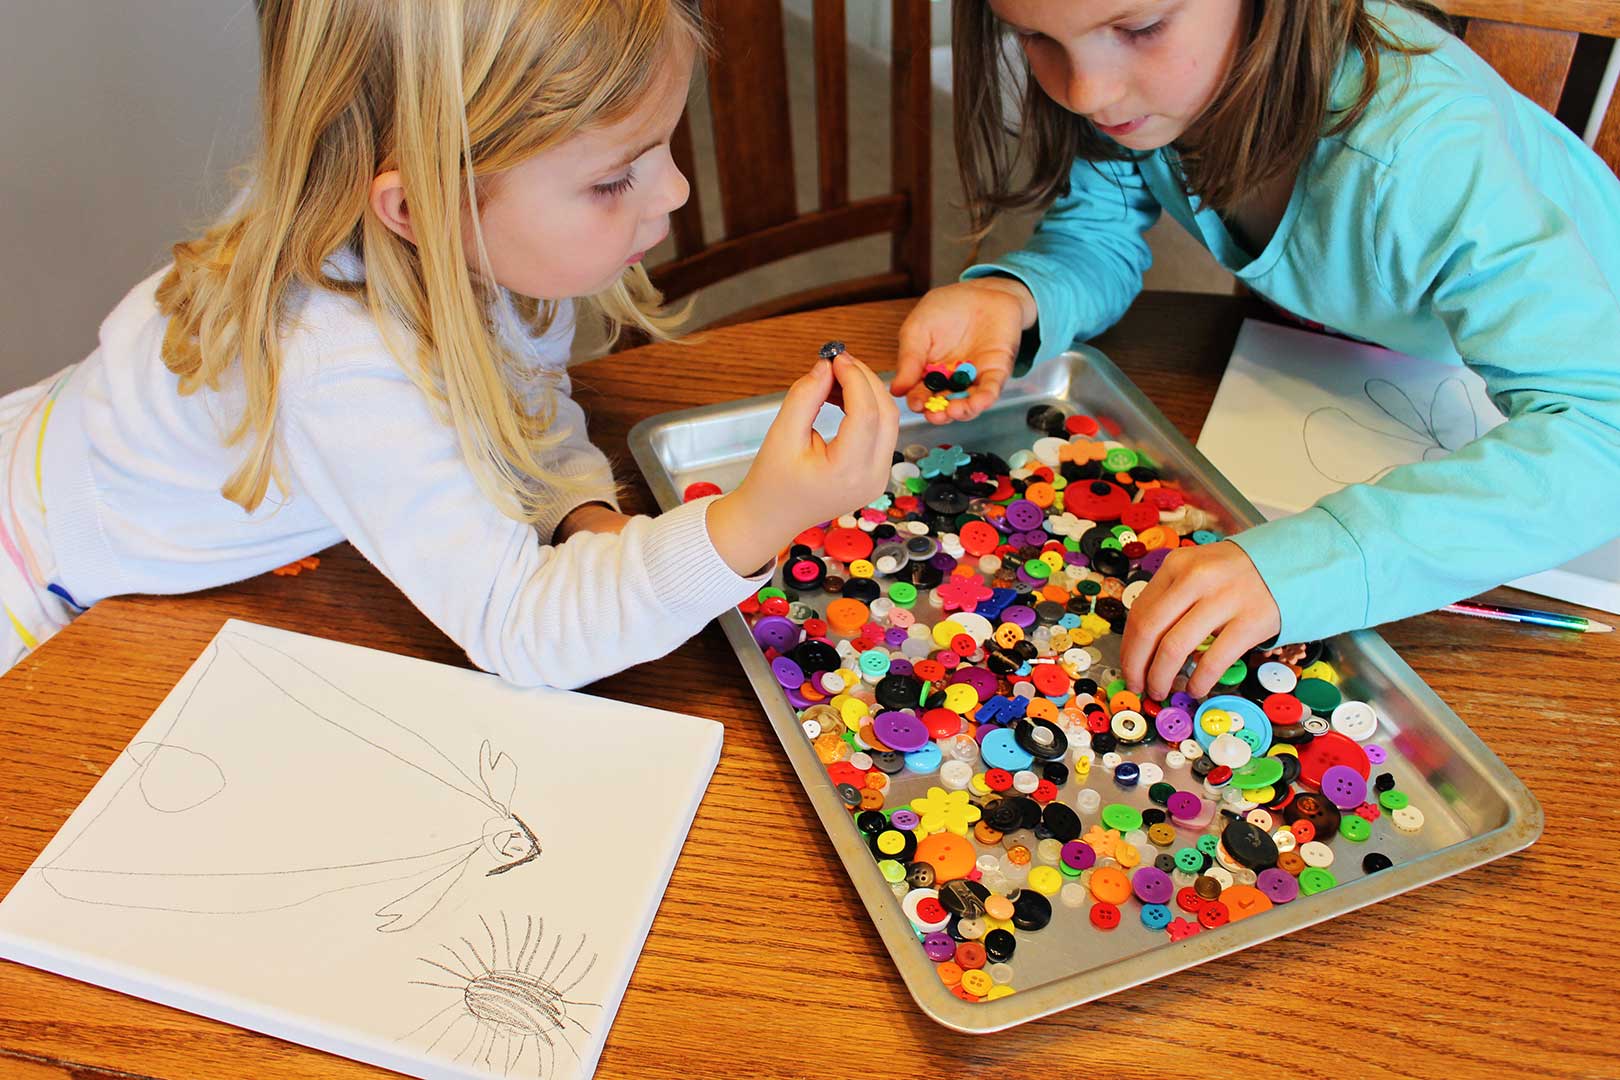 Deux jeunes filles à la recherche de boutons multicolores dans une plaque à biscuits pour leur dessin sur toile.